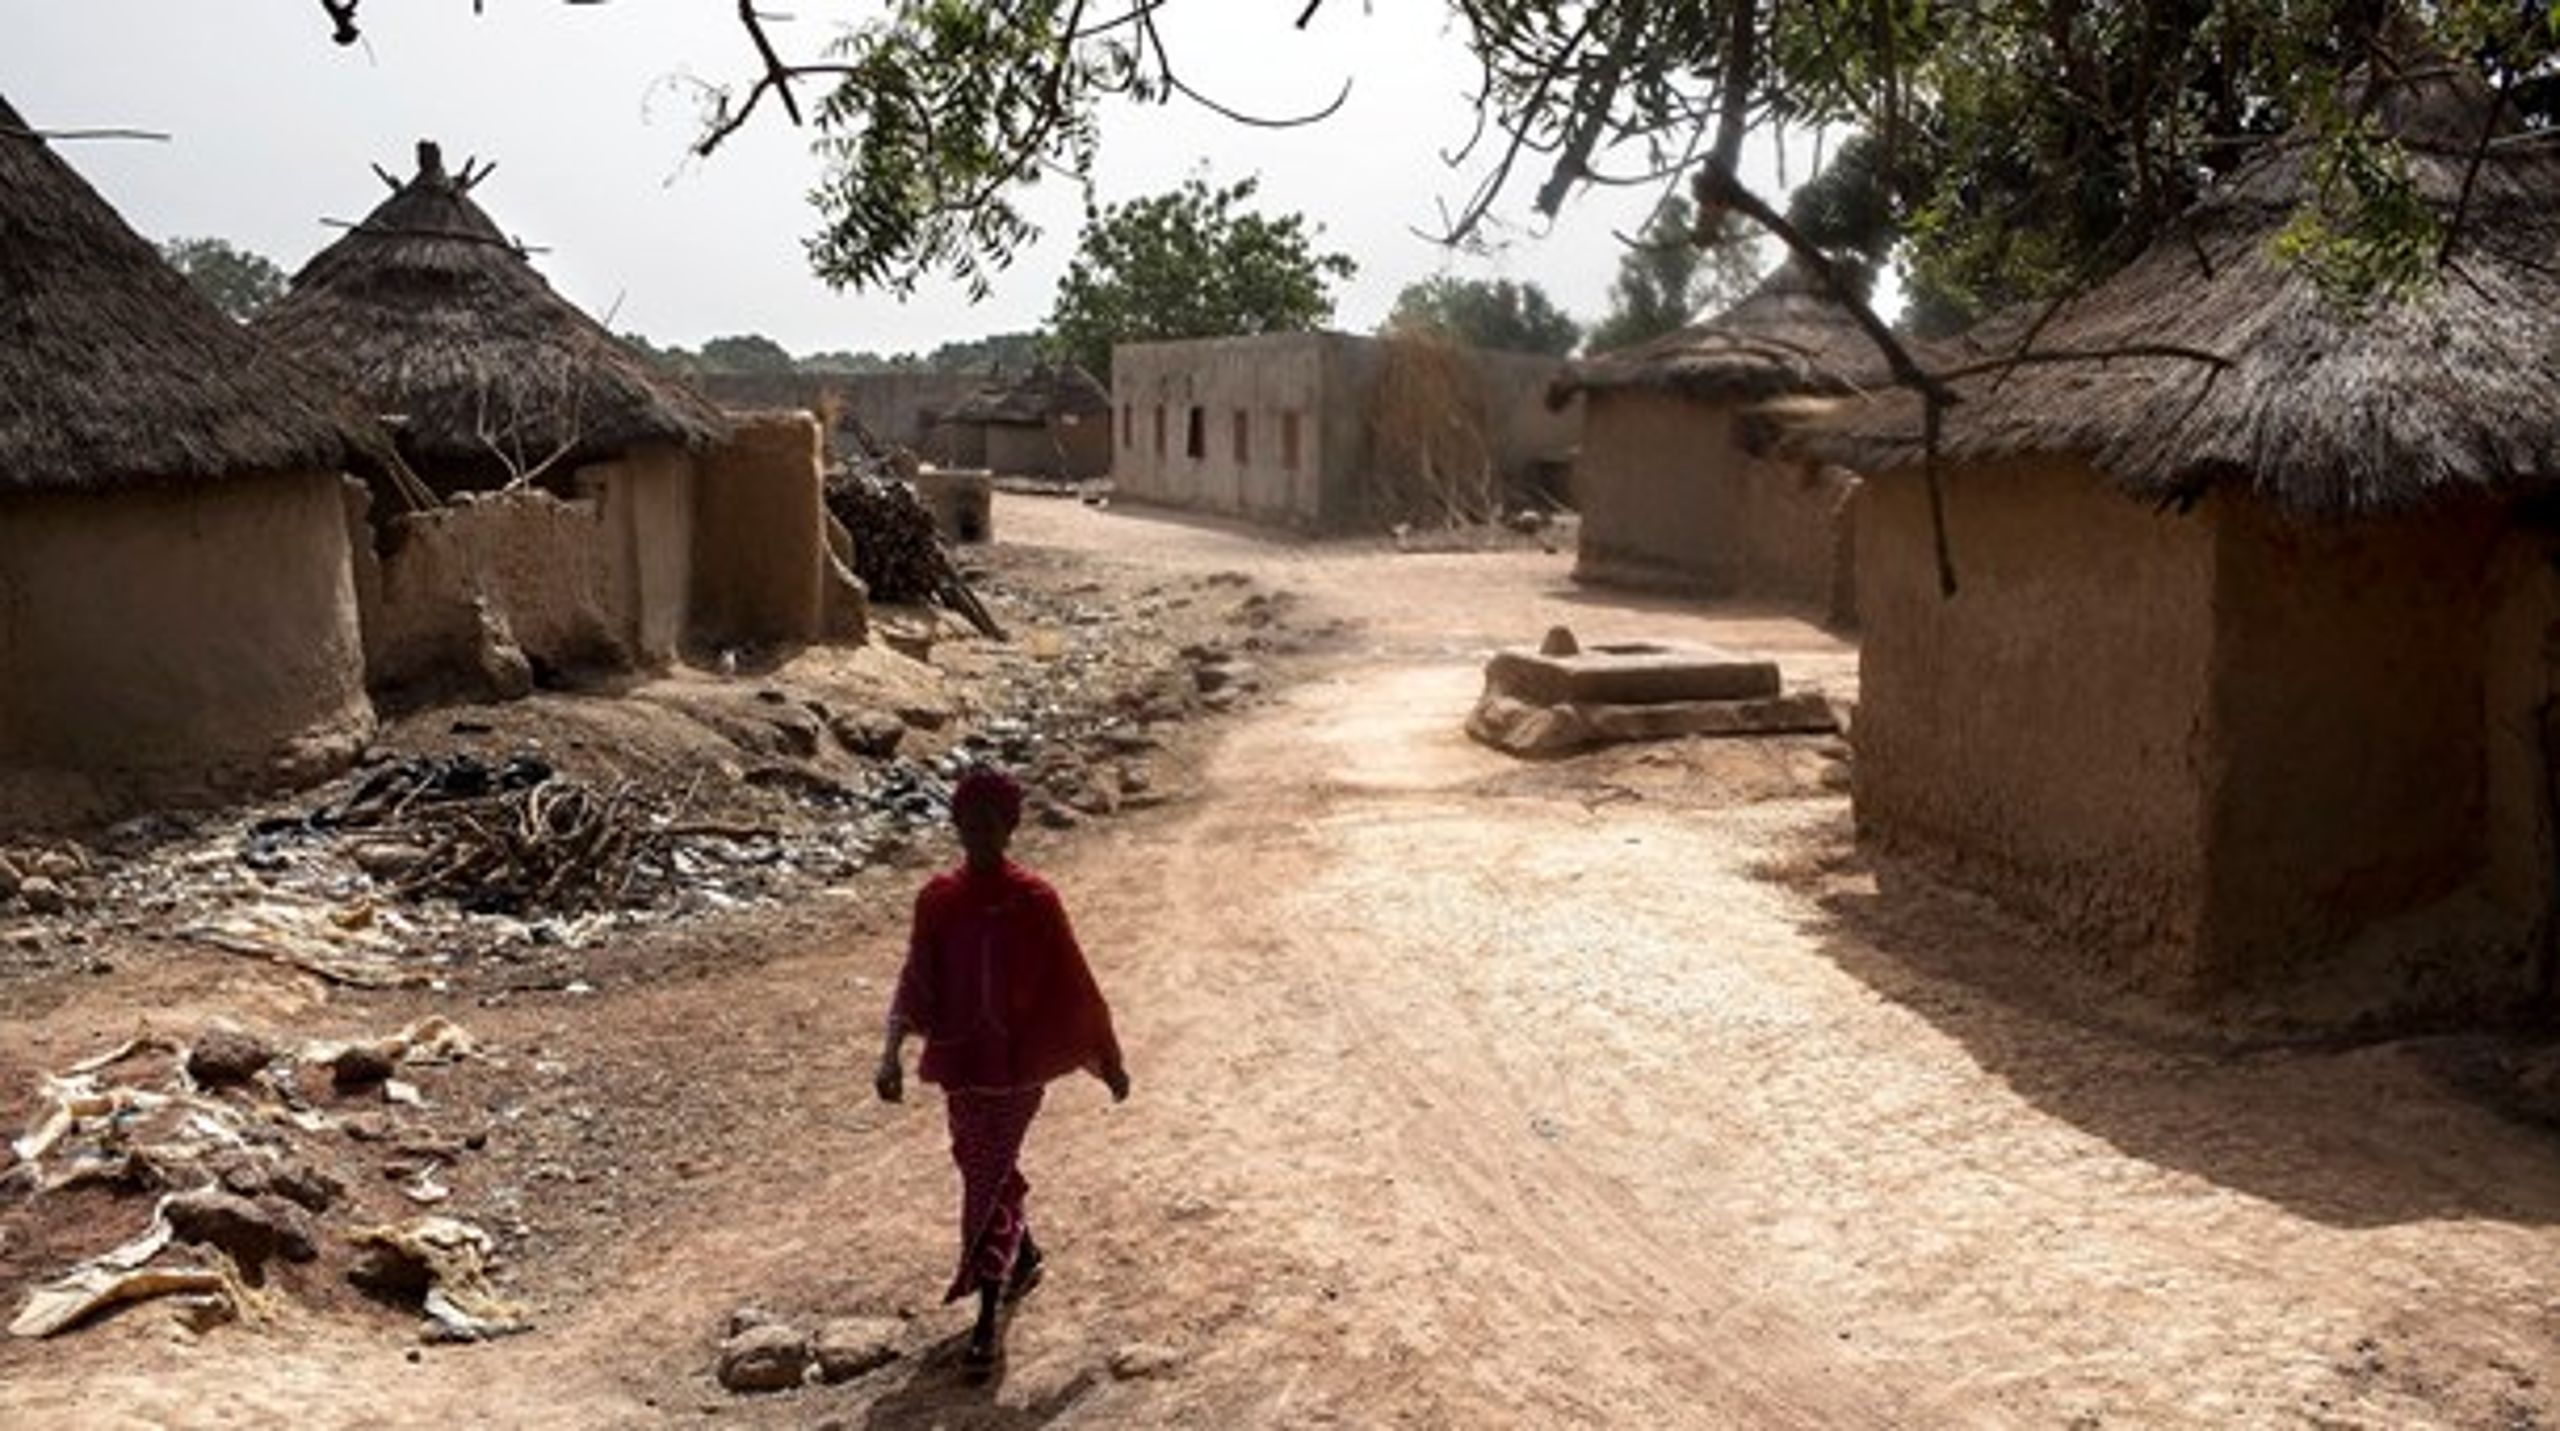 I Mali er der&nbsp;tre respiratorer til en befolkning på knap 20 millioner mennesker. Covid-19-krisen risikerer at kaste 80 millioner afrikanere ud i fattigdom, skriver Hannah Brejnholt.